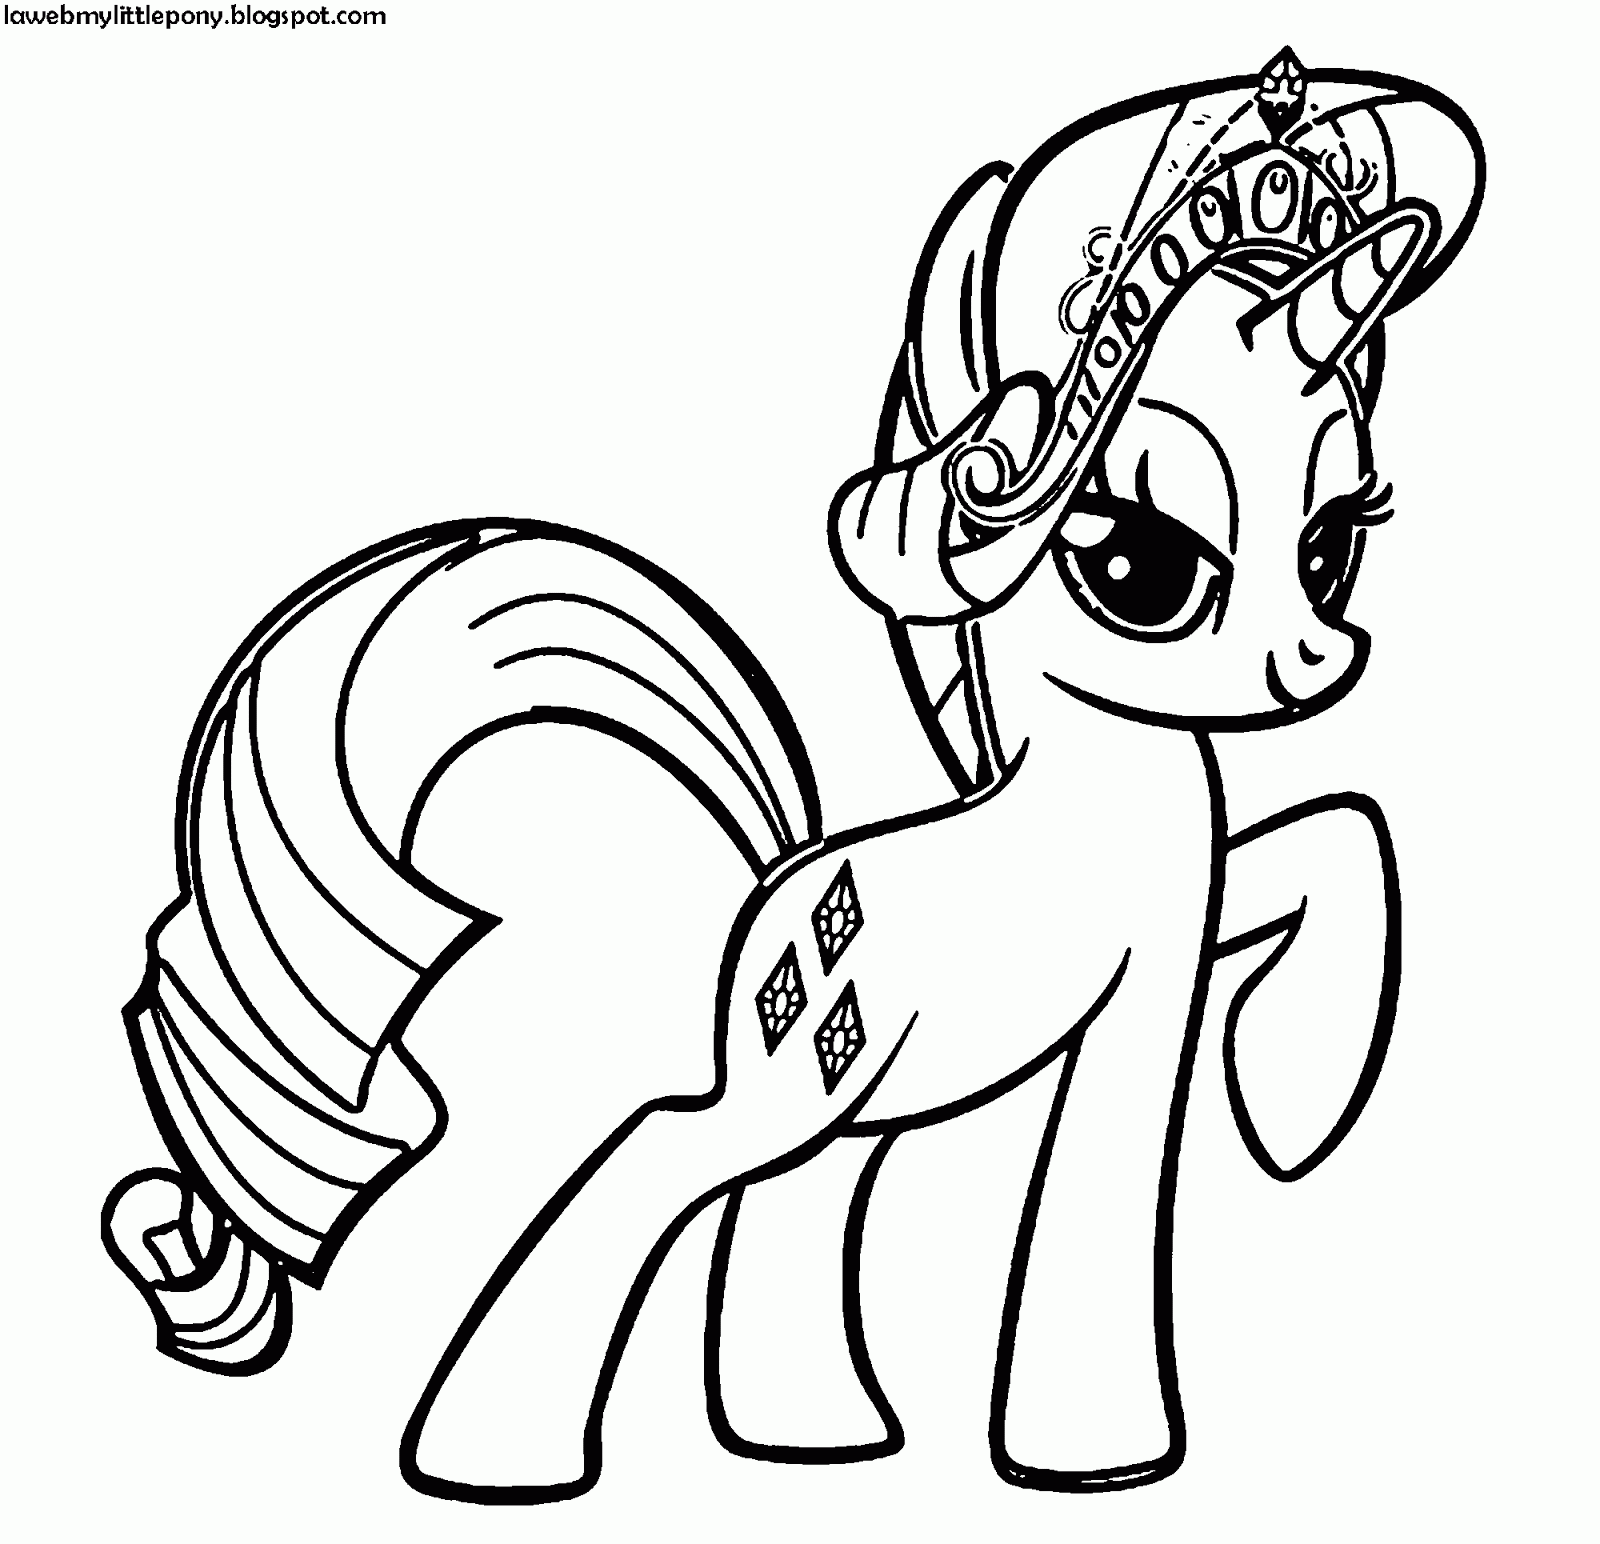 My Little Pony: Dibujos para colorear de Rarity de My Little Pony